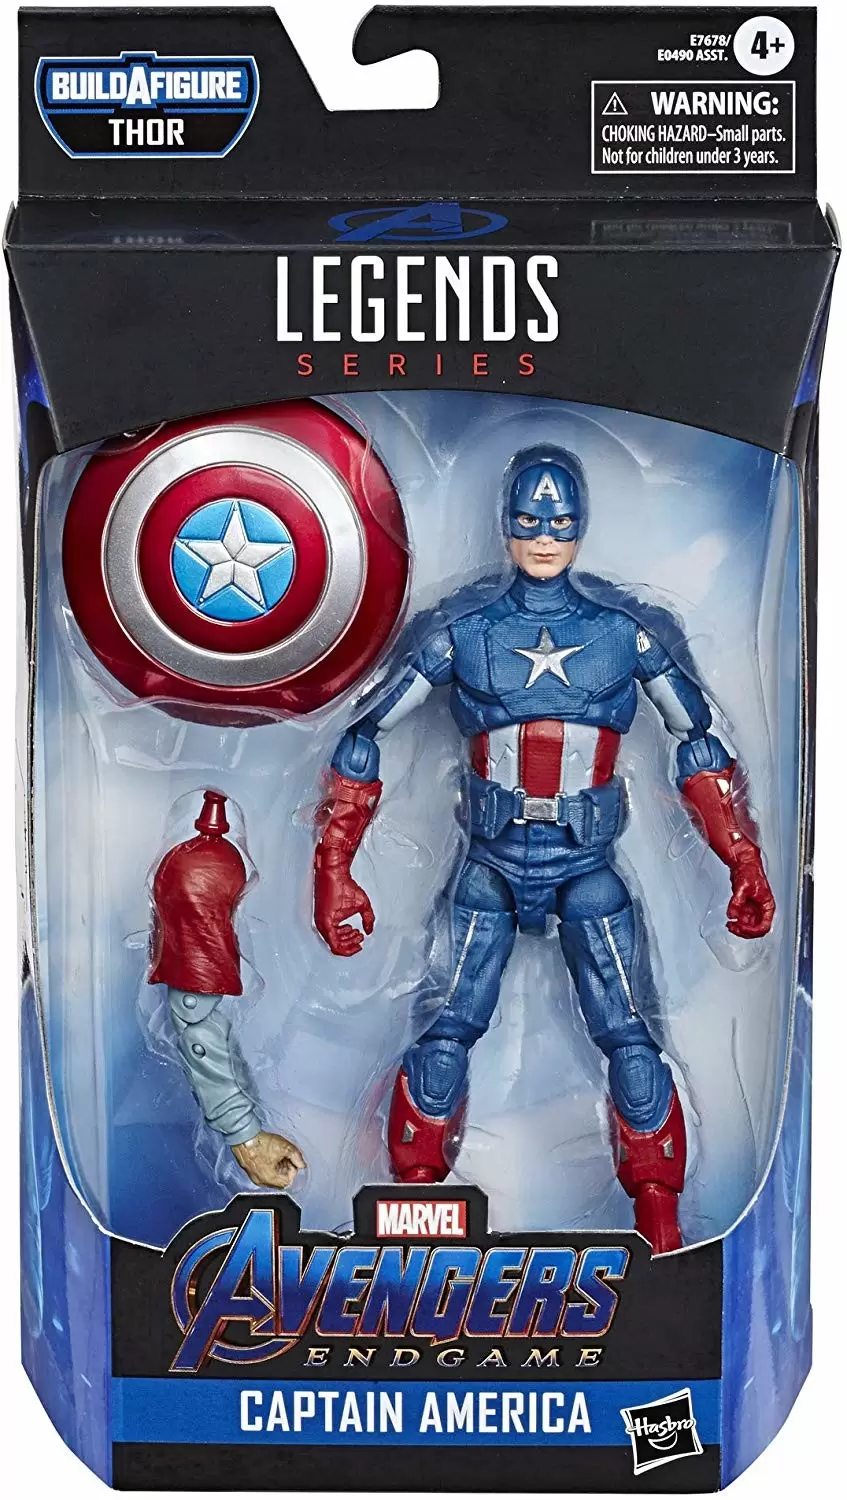 Captain America - figurine E7678/E0490 Marvel Legends Series 6